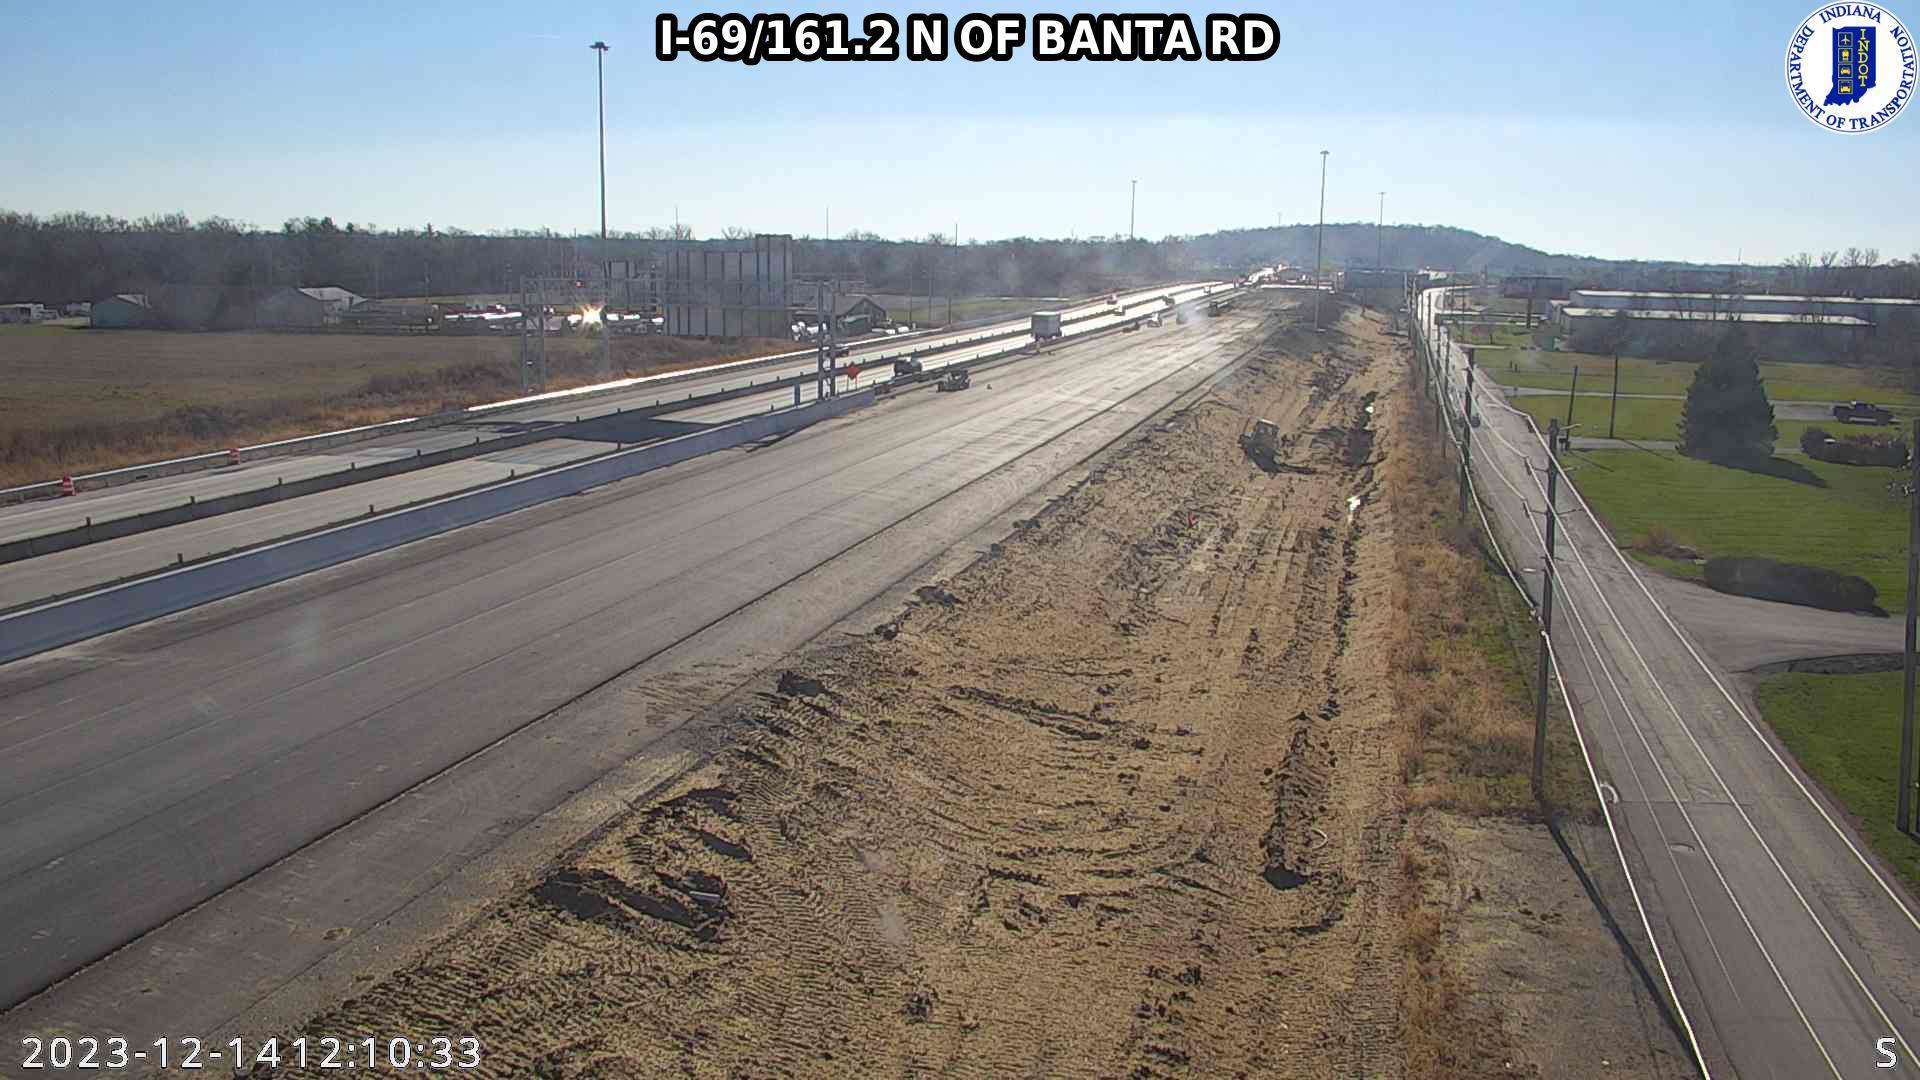 Traffic Cam Indianapolis: I-69: I-69/161.2 N OF BANTA RD: I-69/161.2 N OF BANTA RD Player